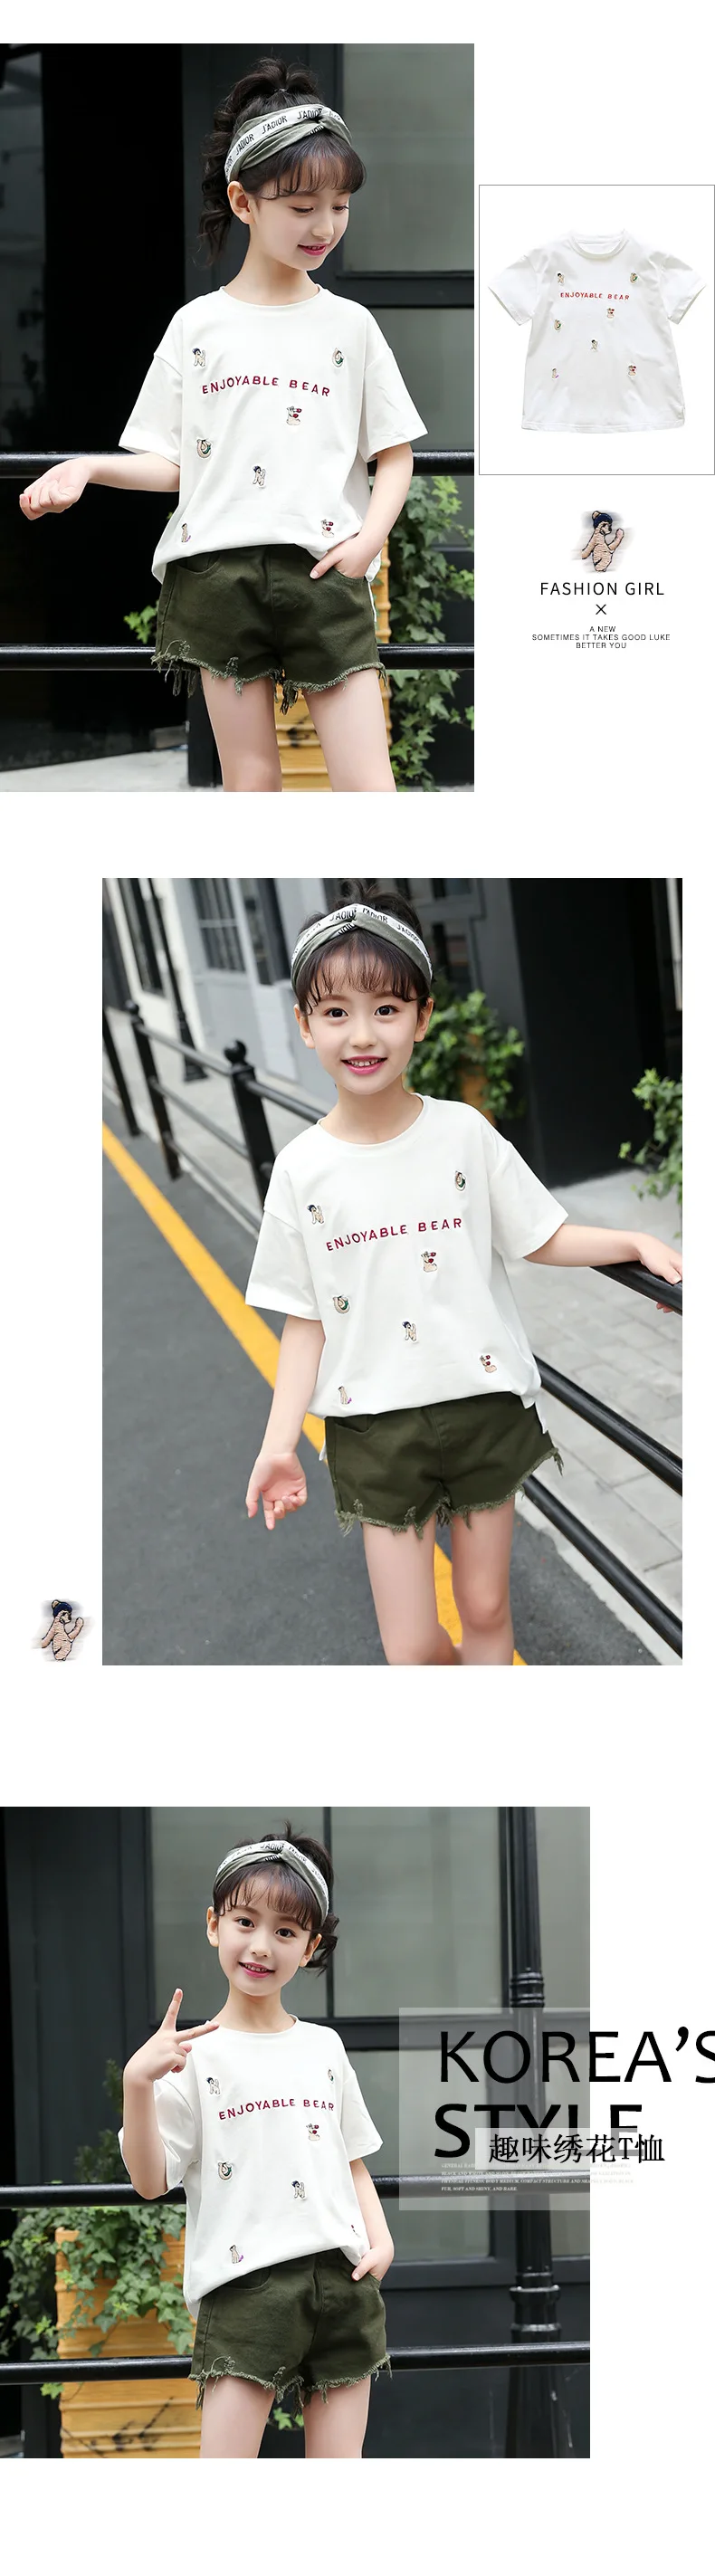 2018 Новый стиль детская одежда для девочек летние Повседневное мультфильм футболка и футболка для девочек белый и зеленый с круглым вырезом